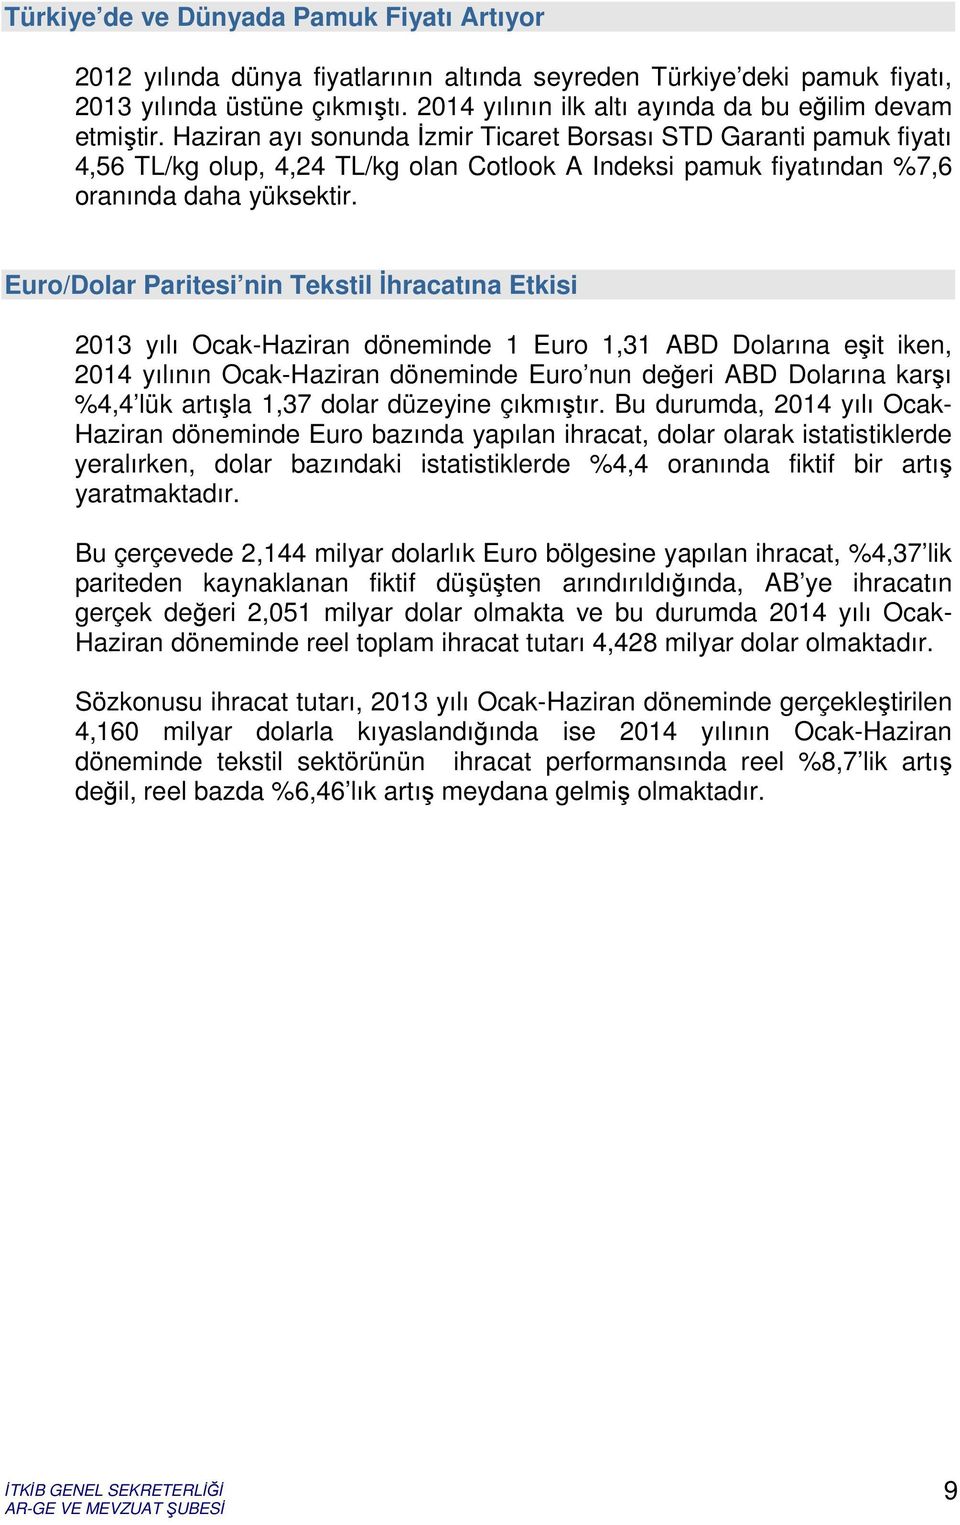 Haziran ayı sonunda İzmir Ticaret Borsası STD Garanti pamuk fiyatı 4,56 TL/kg olup, 4,24 TL/kg olan Cotlook A Indeksi pamuk fiyatından %7,6 oranında daha yüksektir.